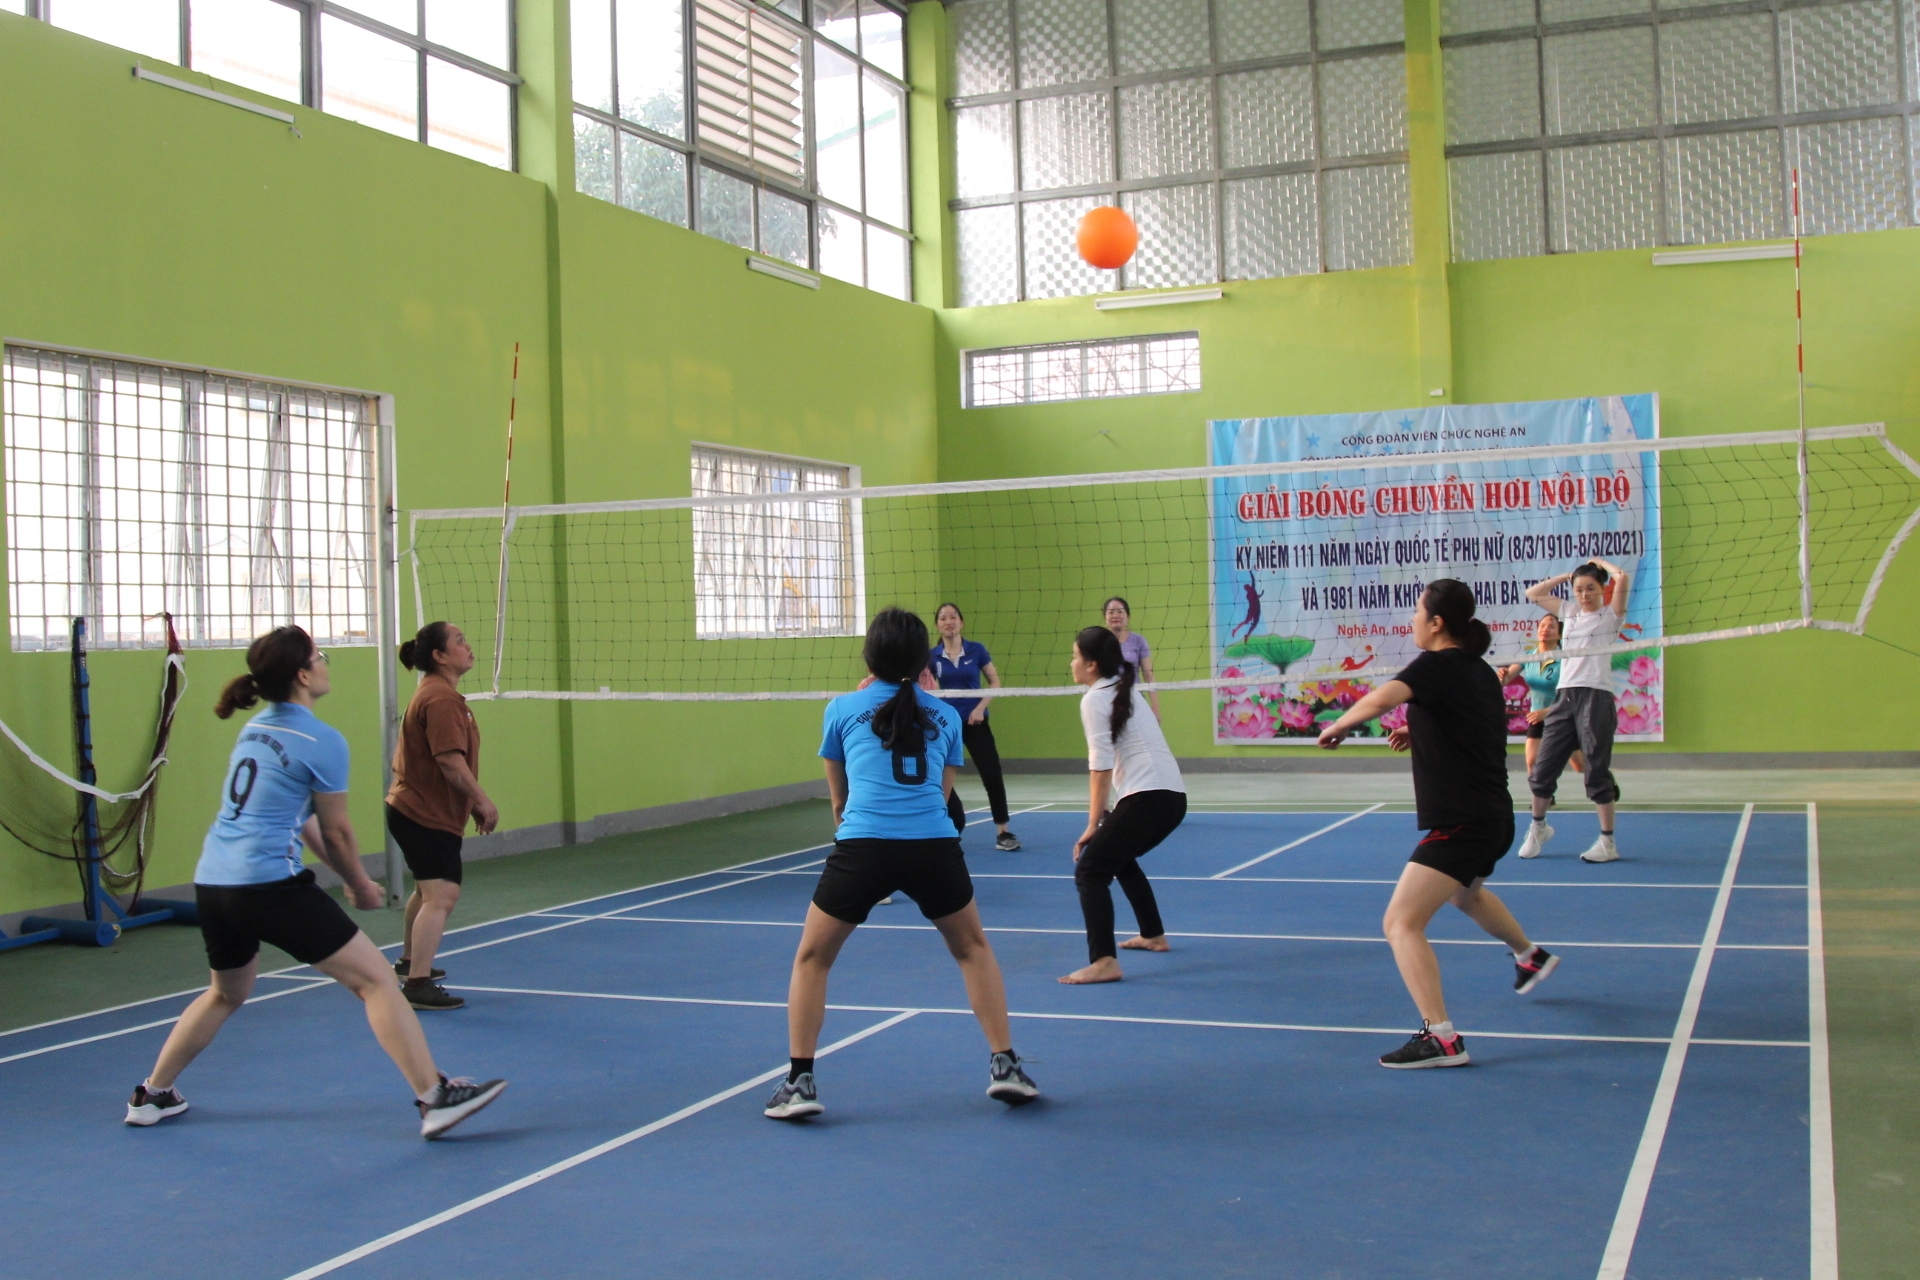 Nghệ An: Phong trào thể dục thể thao trong CNVCLĐ ngày càng phát triển